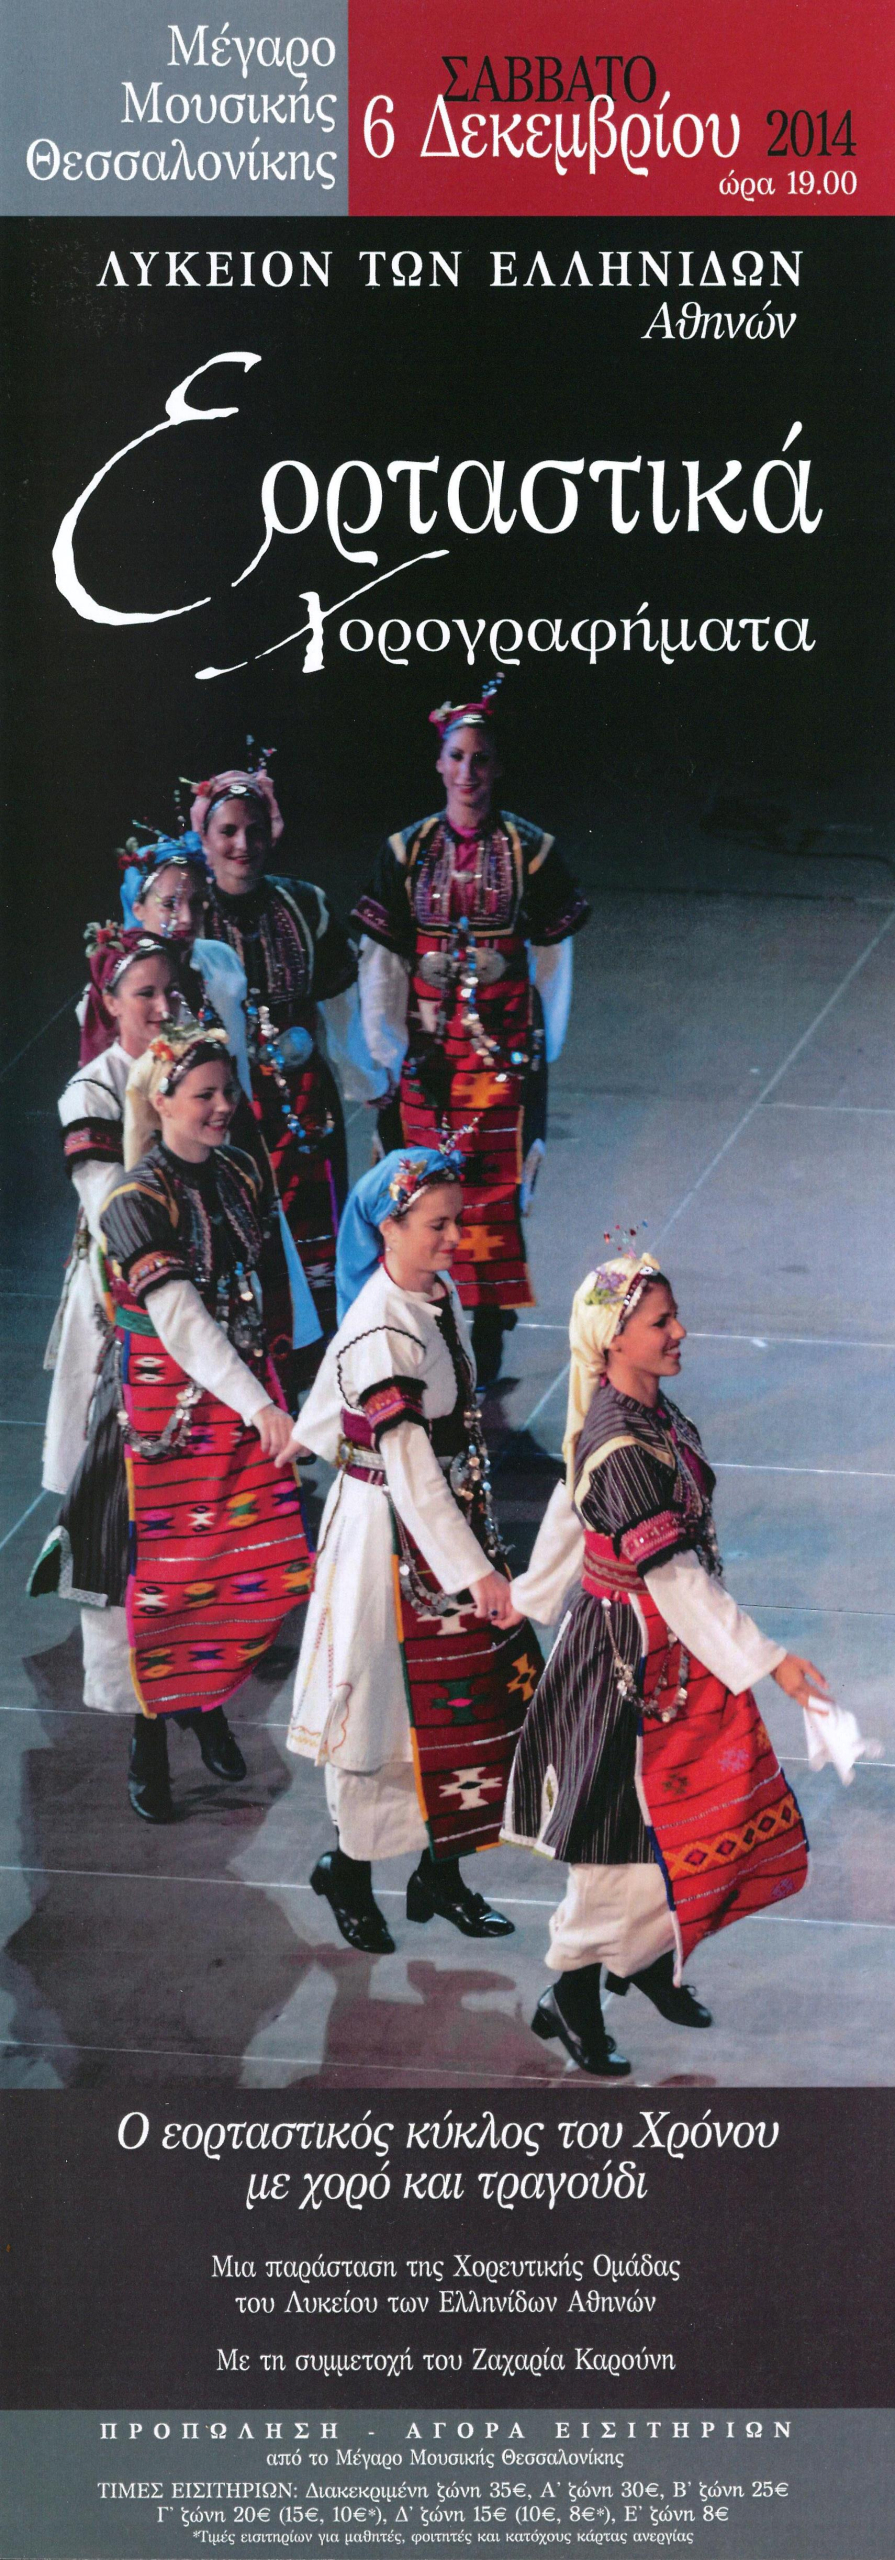 Εορταστικά Χορογραφήματα" - Χορευτική Παράσταση στο Μέγαρο Μουσικής  Θεσσαλονίκης | Λύκειον των Ελληνίδων